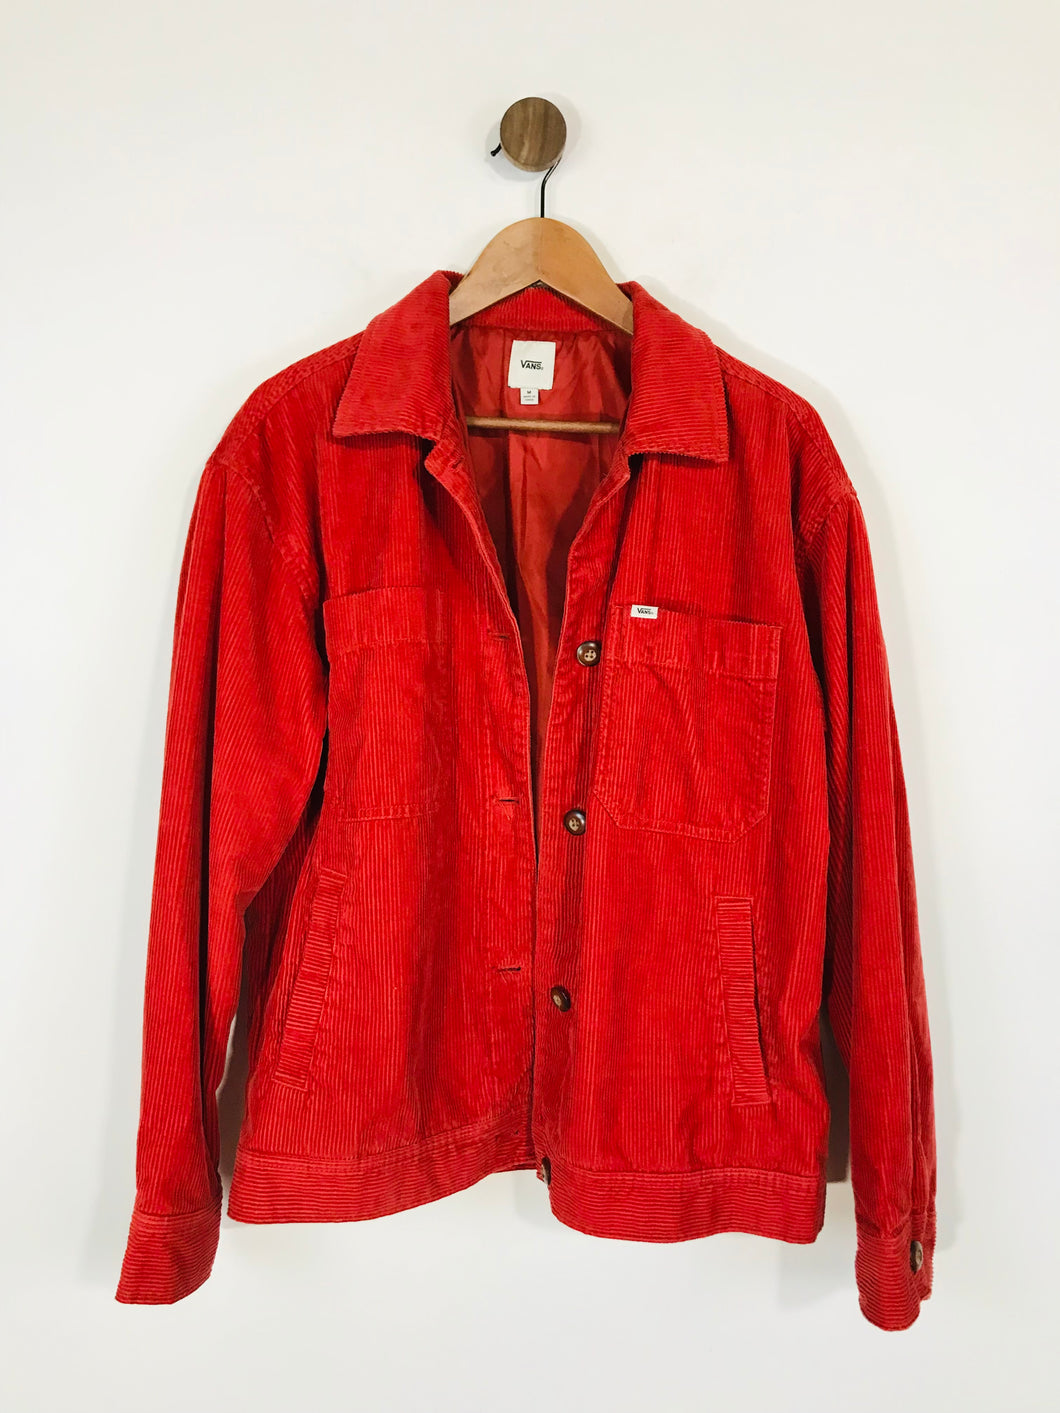 Vans Women's Corduroy Jacket Overcoat | M UK10-12 | Red